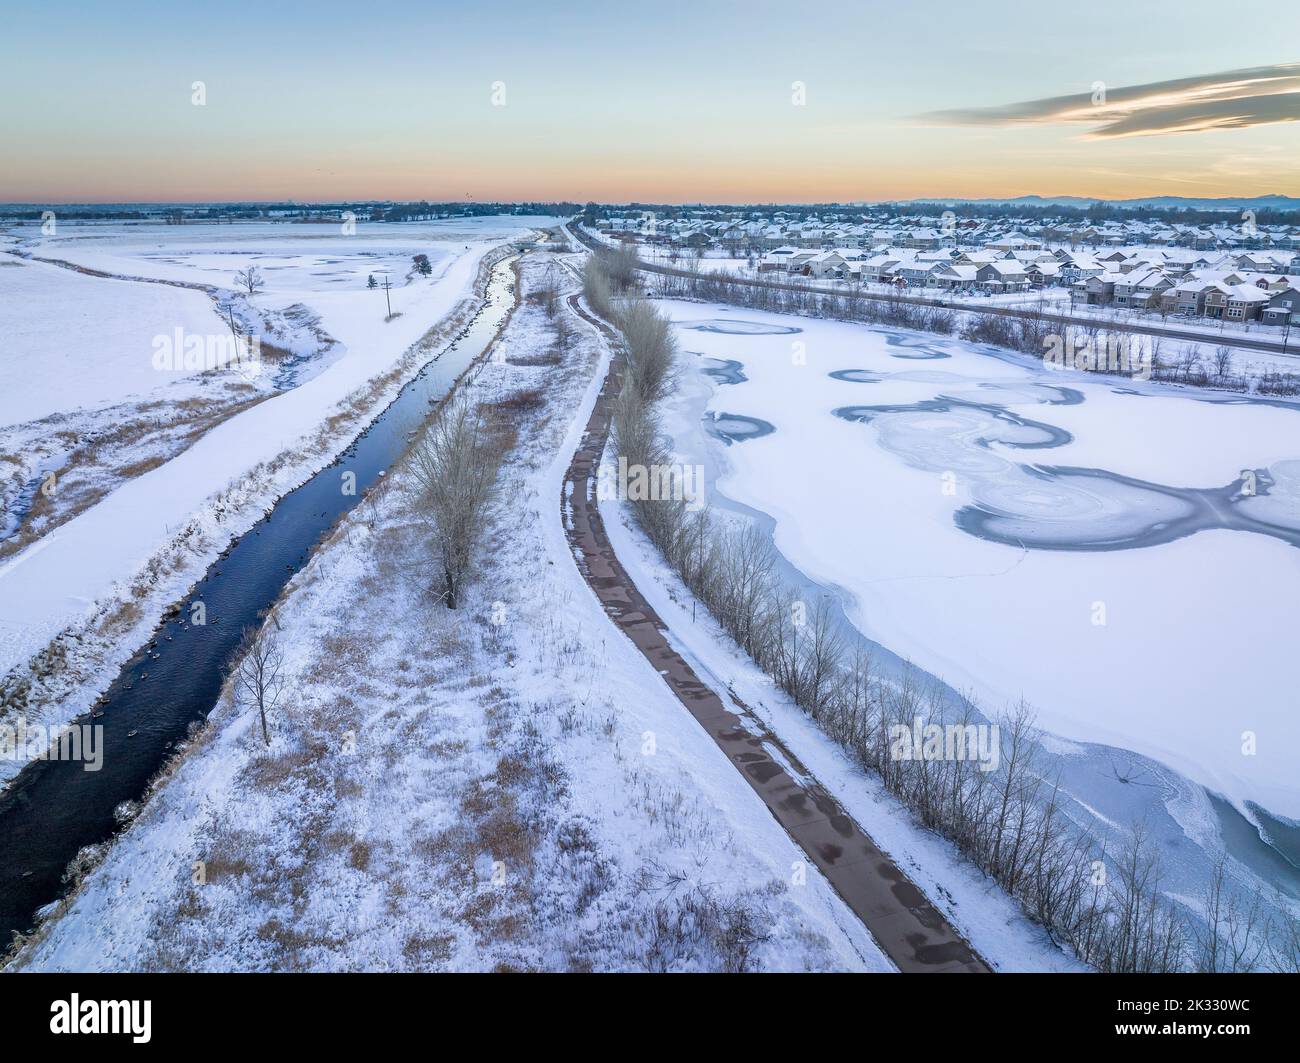 Canale di irrigazione, pista ciclabile e laghetto ghiacciato, scenario invernale dopo il tramonto, vista aerea della zona di Fort Collins nel Colorado settentrionale Foto Stock